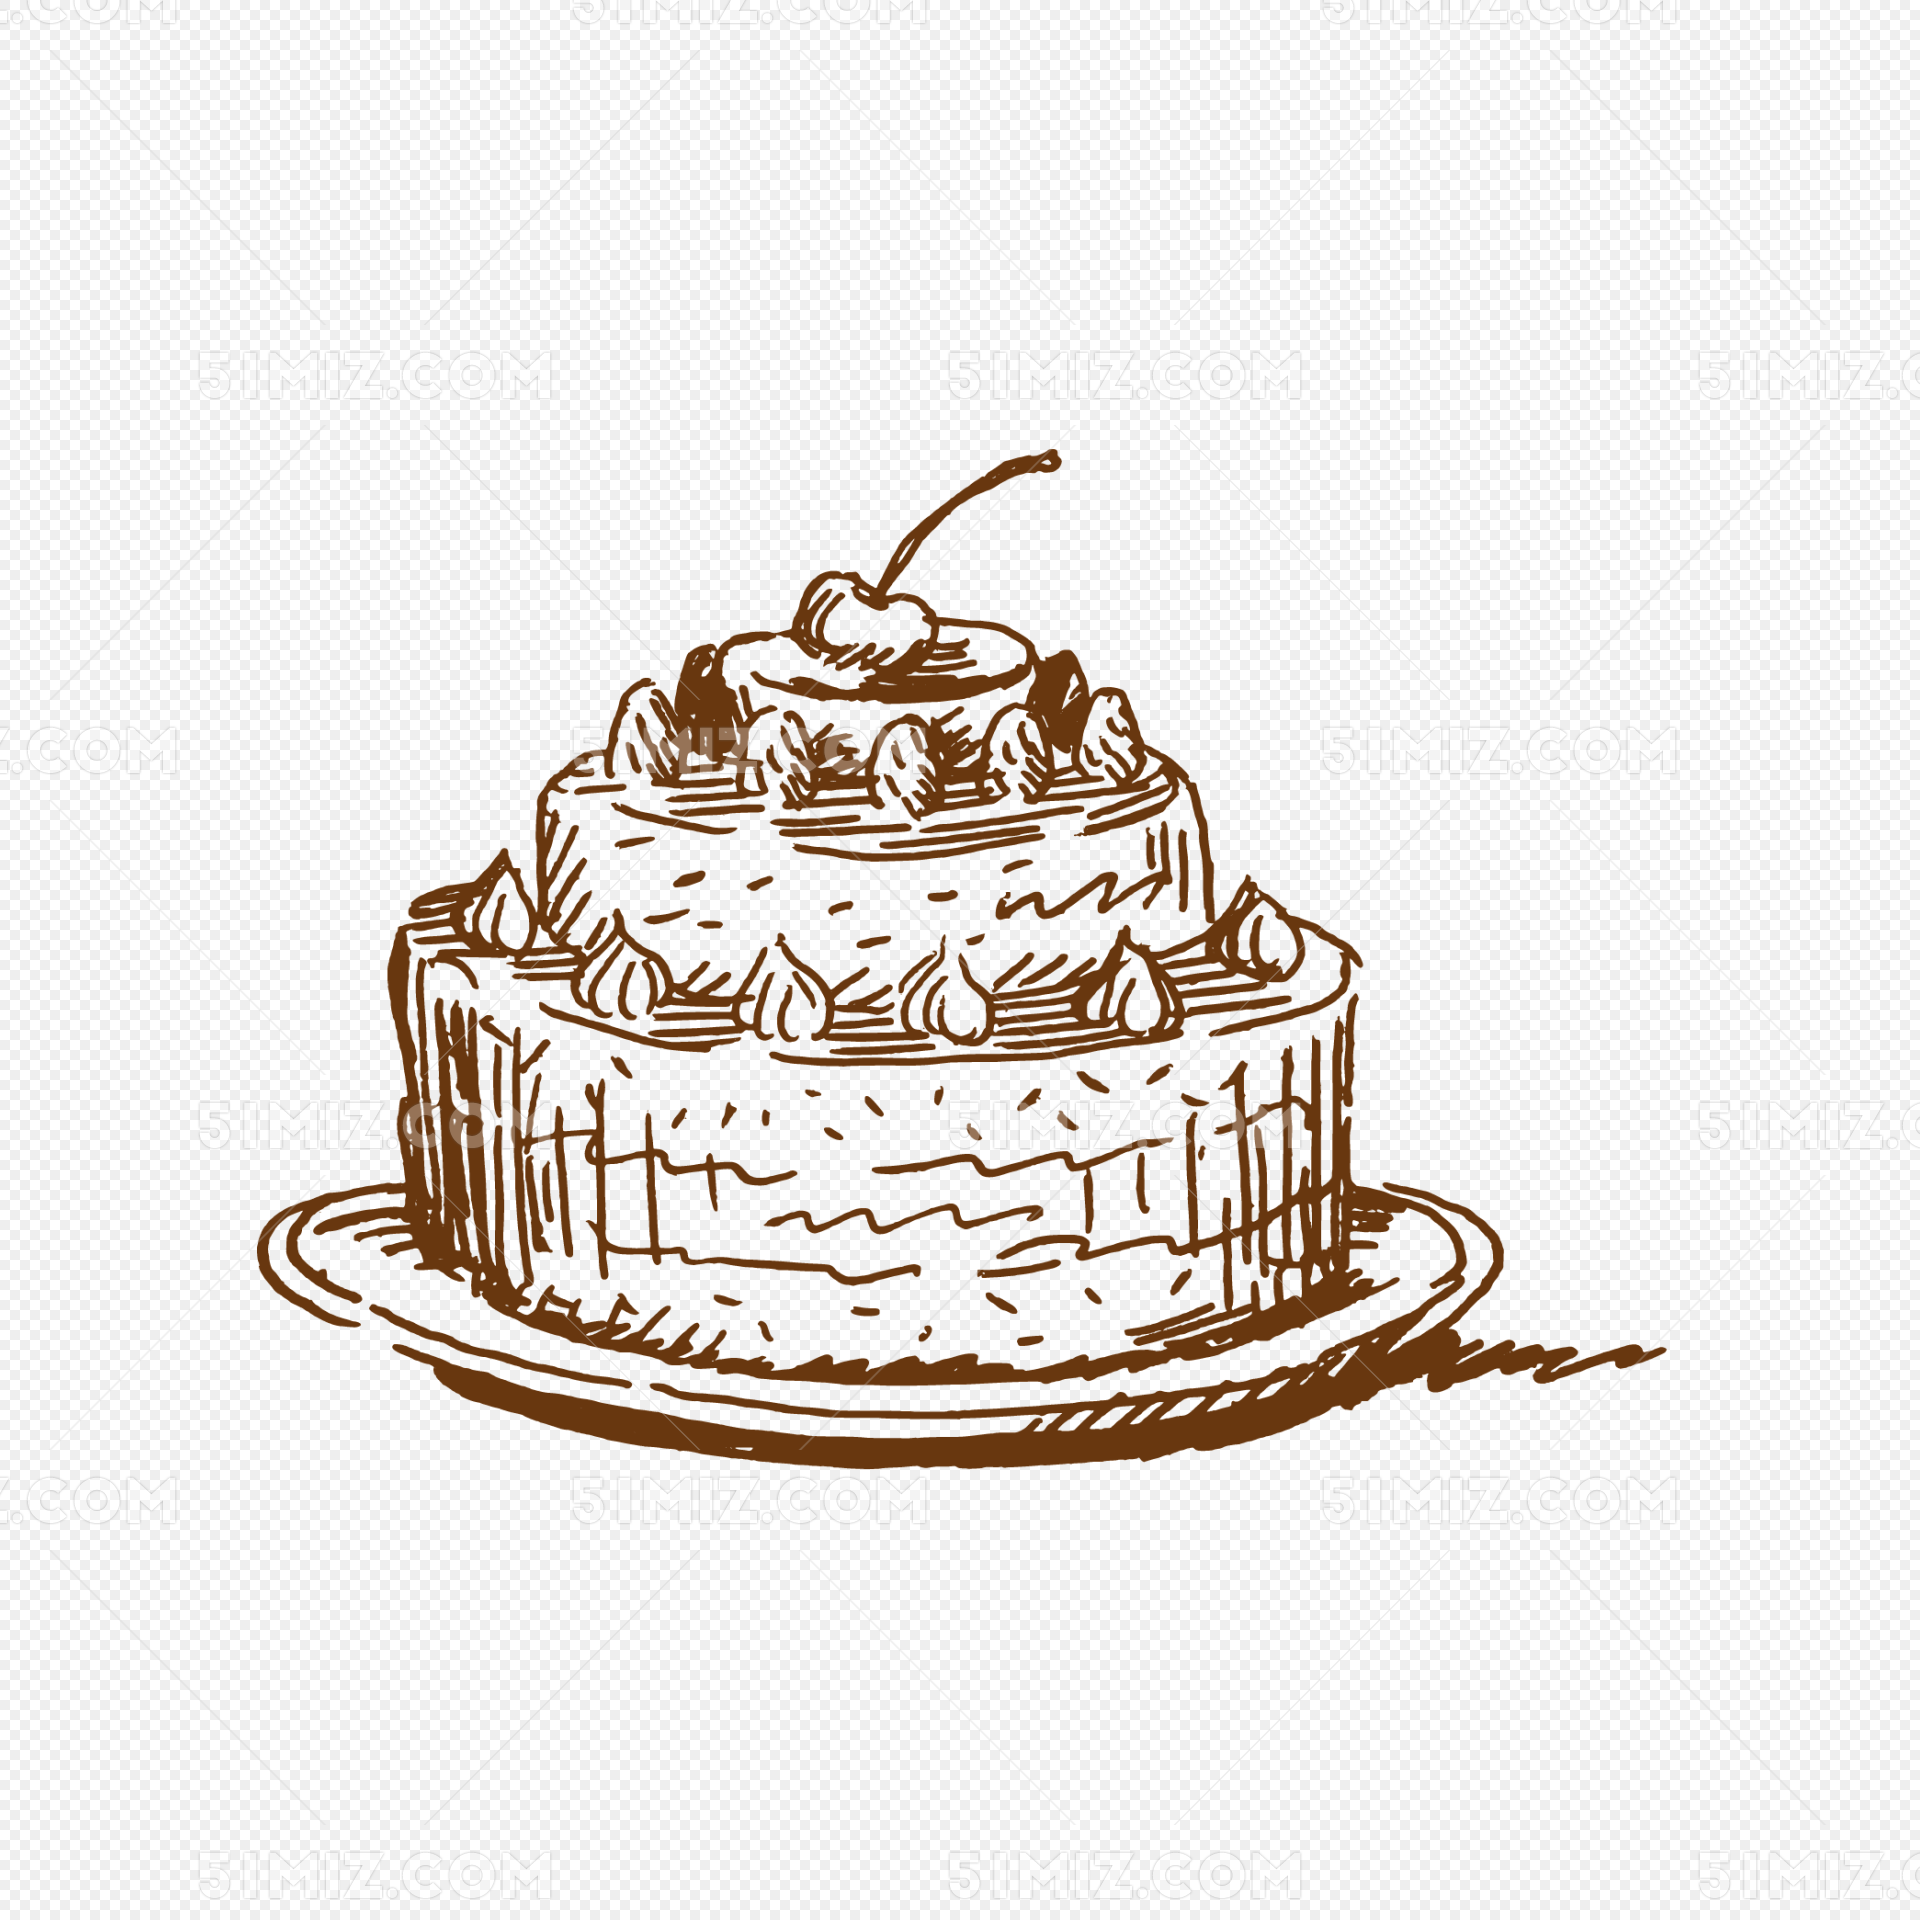 彩色三层生日蛋糕简笔画画法图片步骤 咿咿呀呀儿童手工网